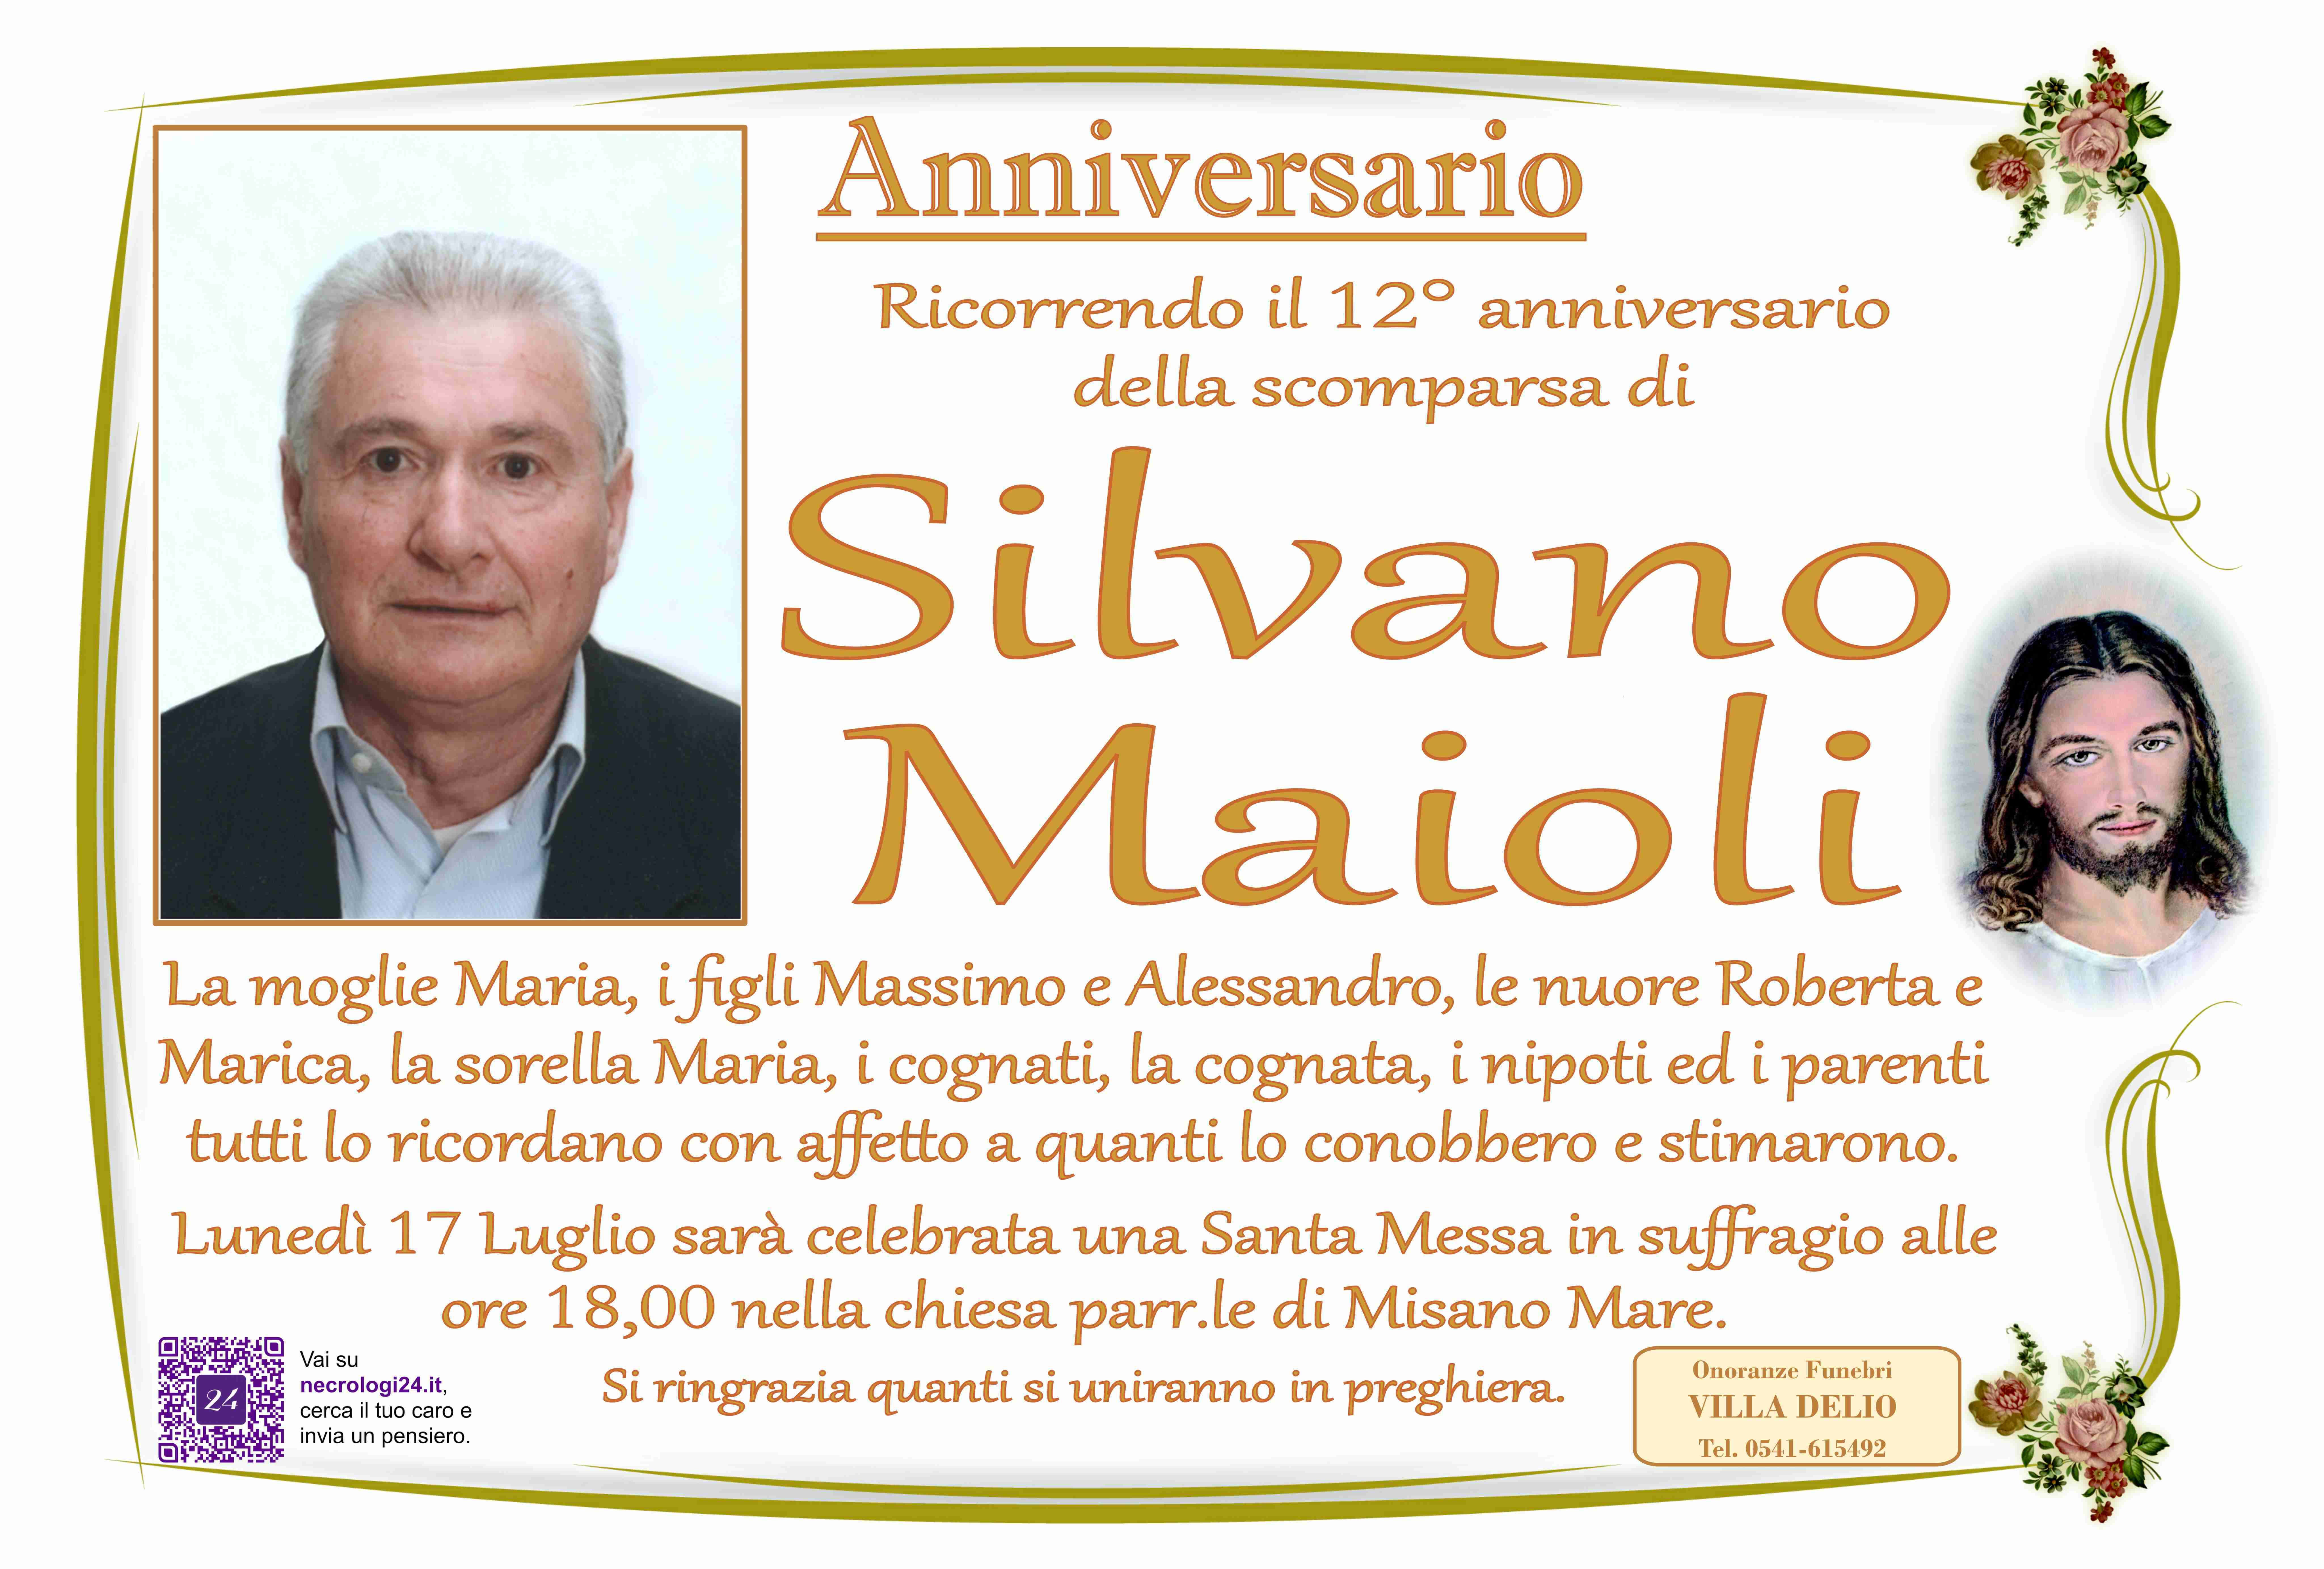 Silvano Maioli